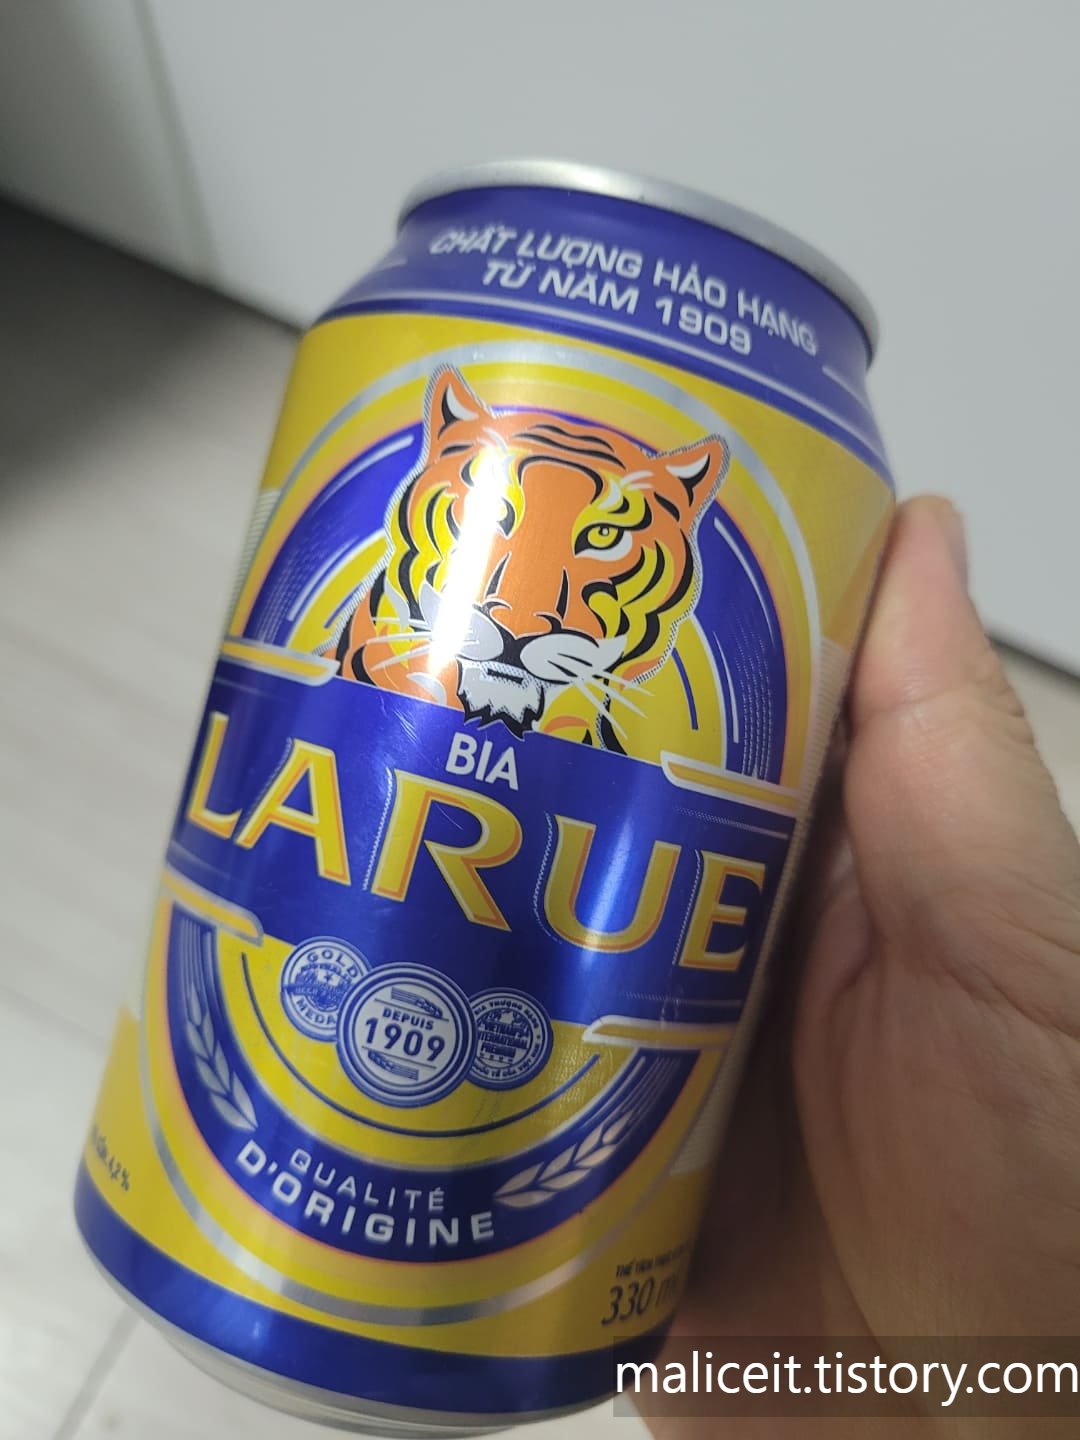 베트남 다낭 호이안 여행 기념품 쇼핑리스트 LARUE 맥주